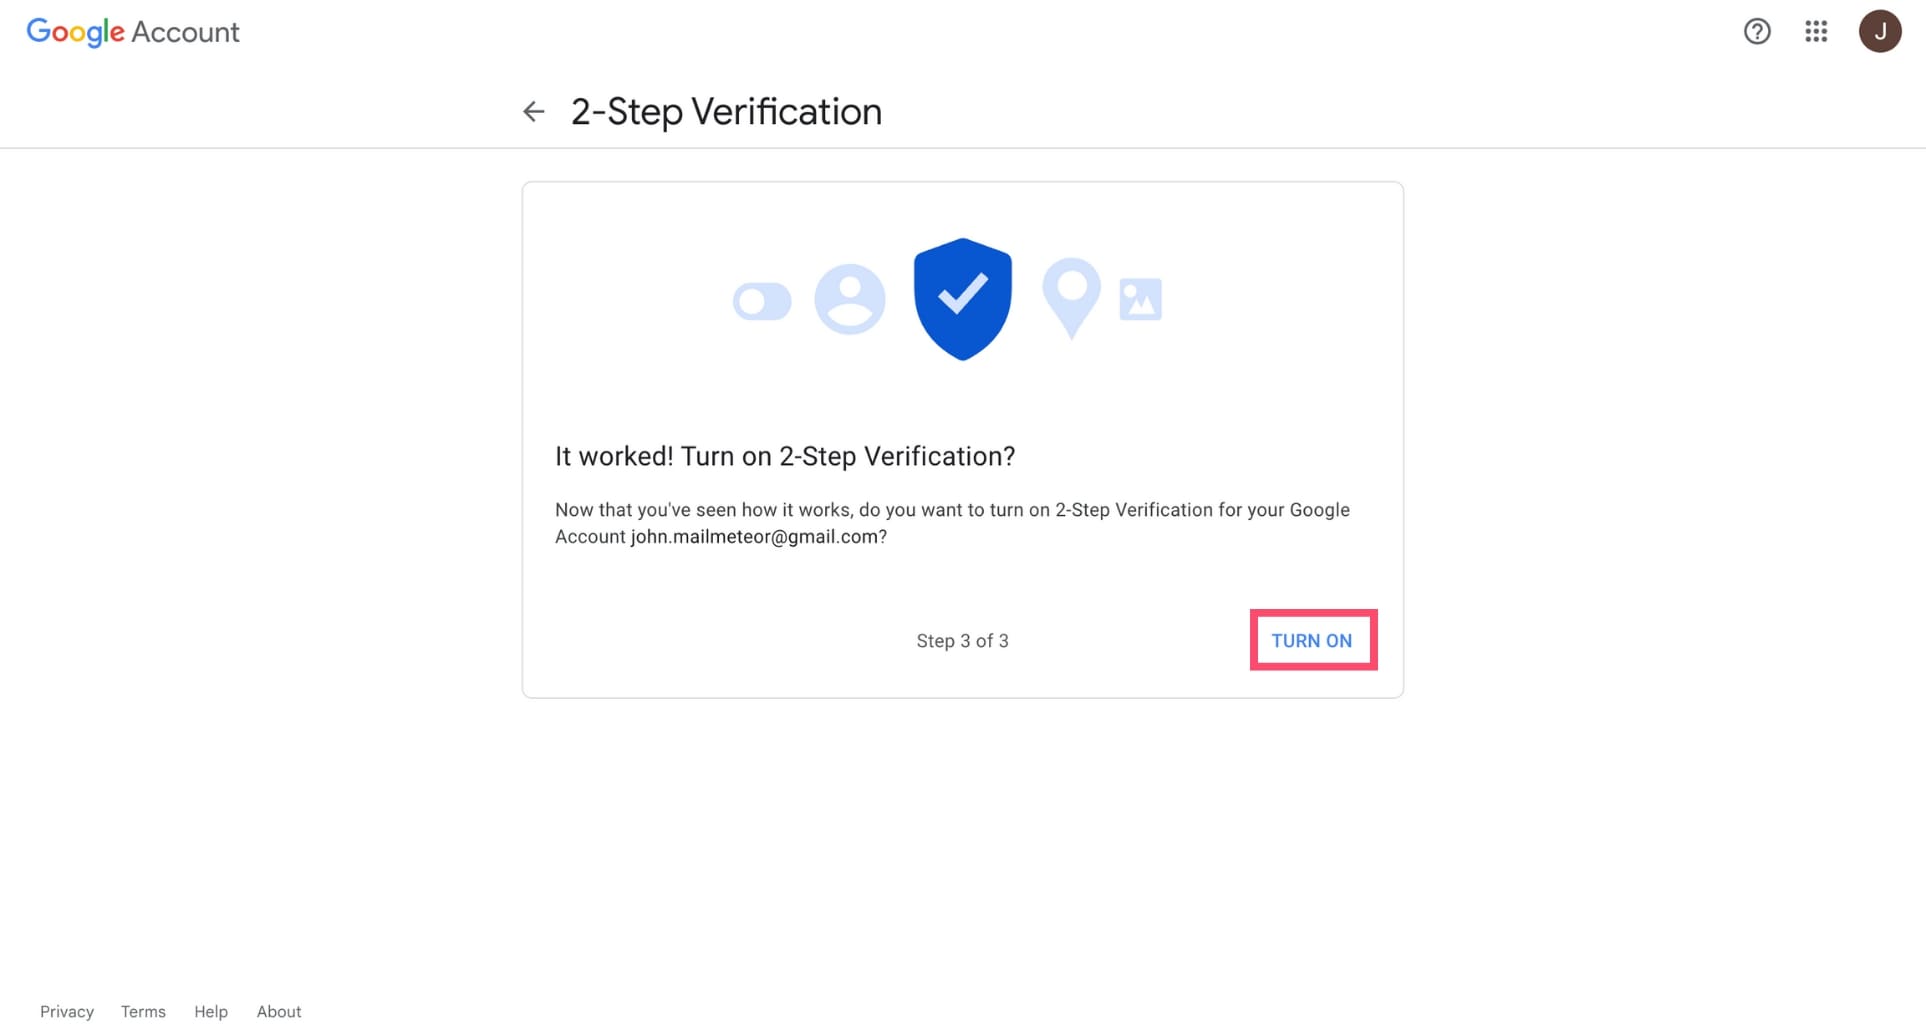 Turn on 2-step verification